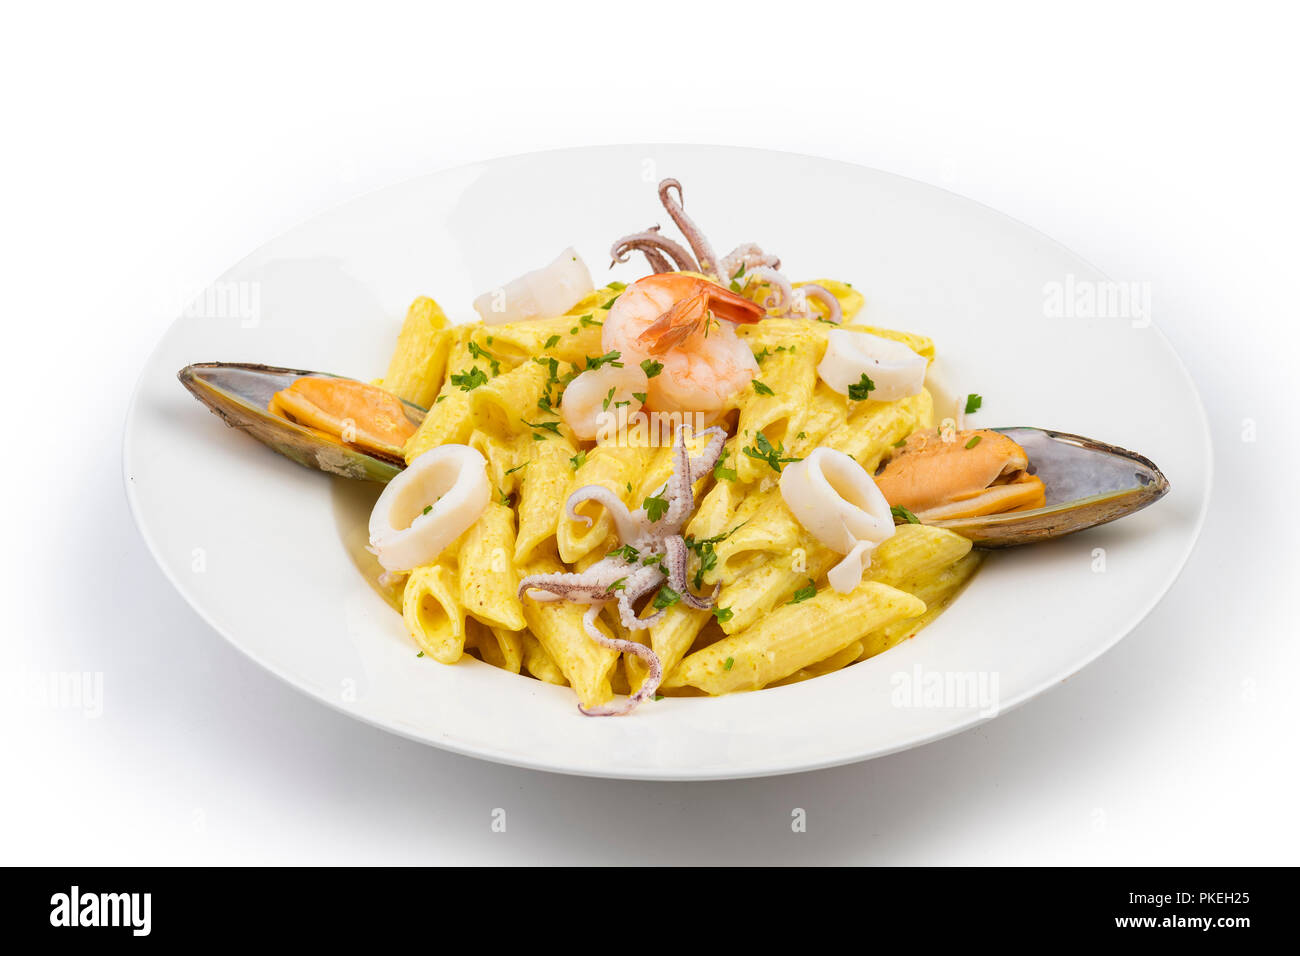 Plato de pasta italiana con mariscos y bottarga, comida mediterránea Foto de stock